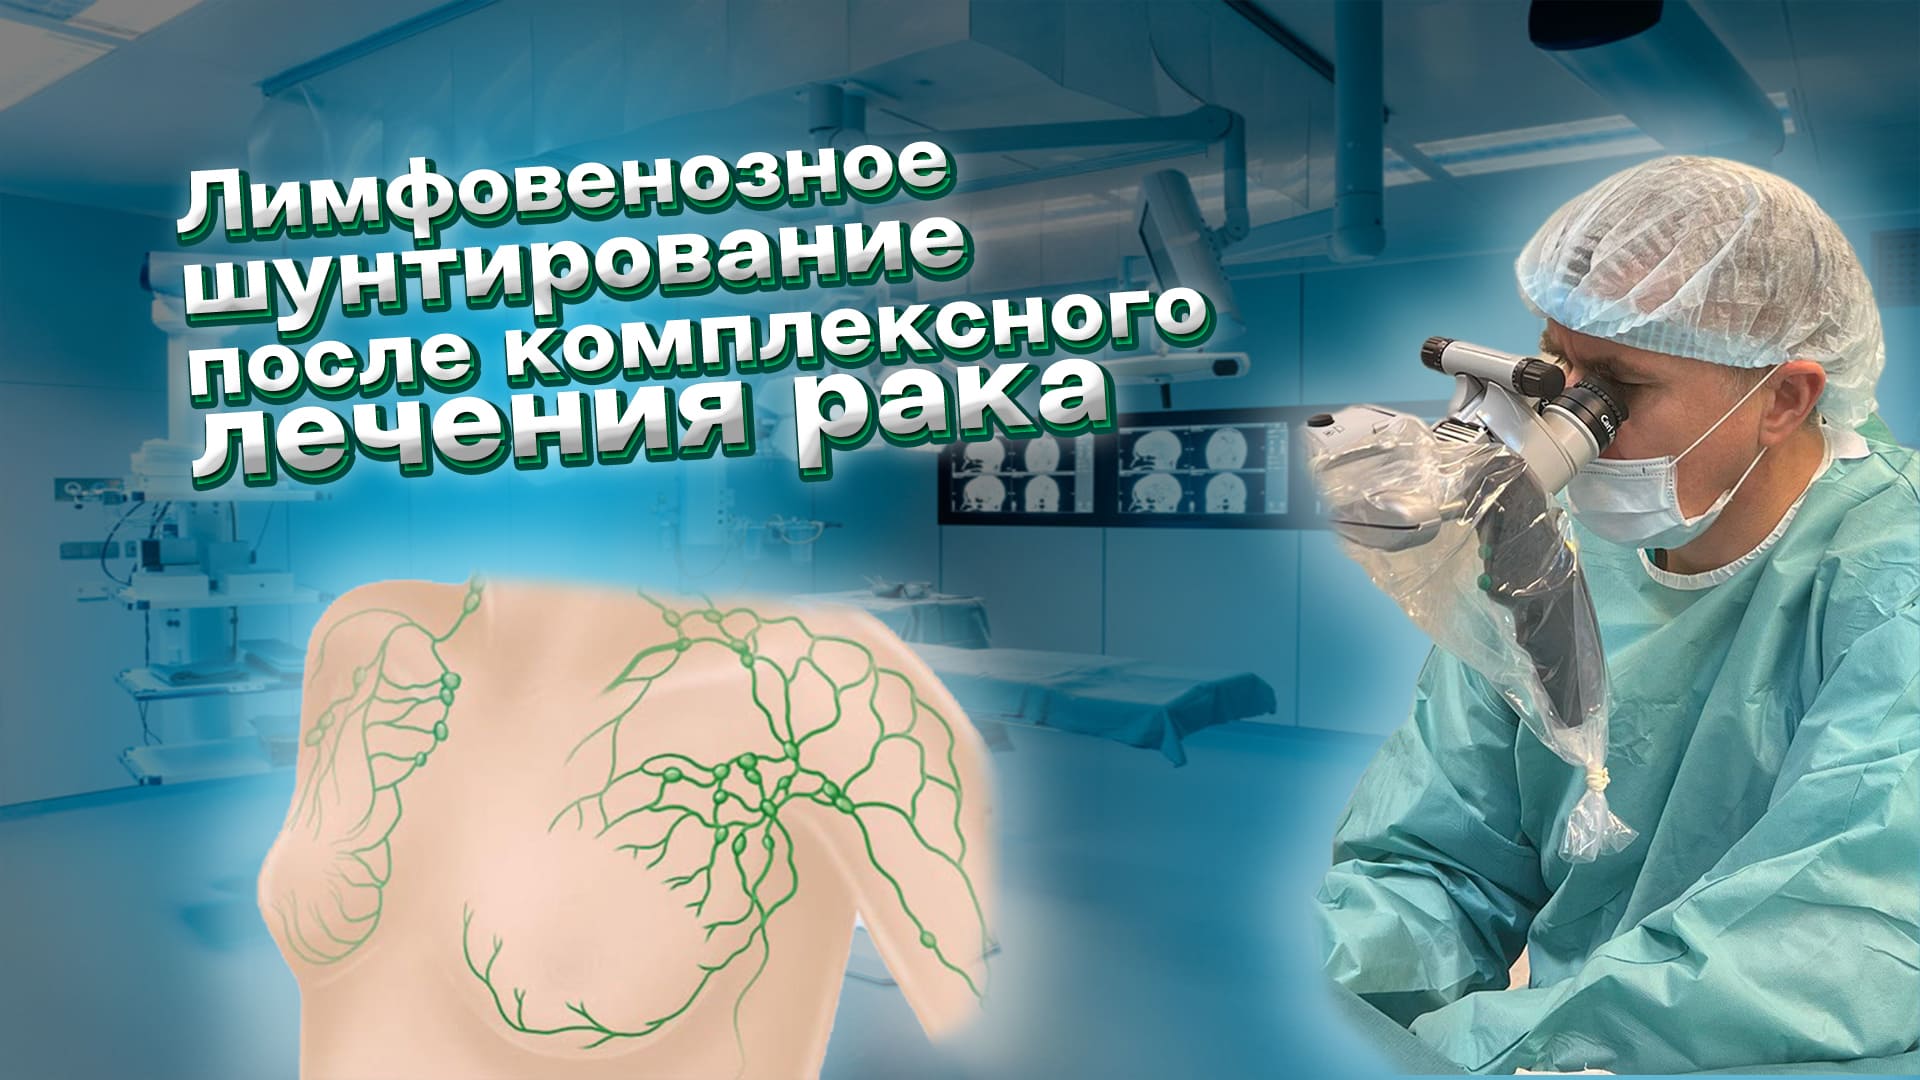 Лимфовенозное шунтирование после комплексного лечения рака в Санкт-Петербурге